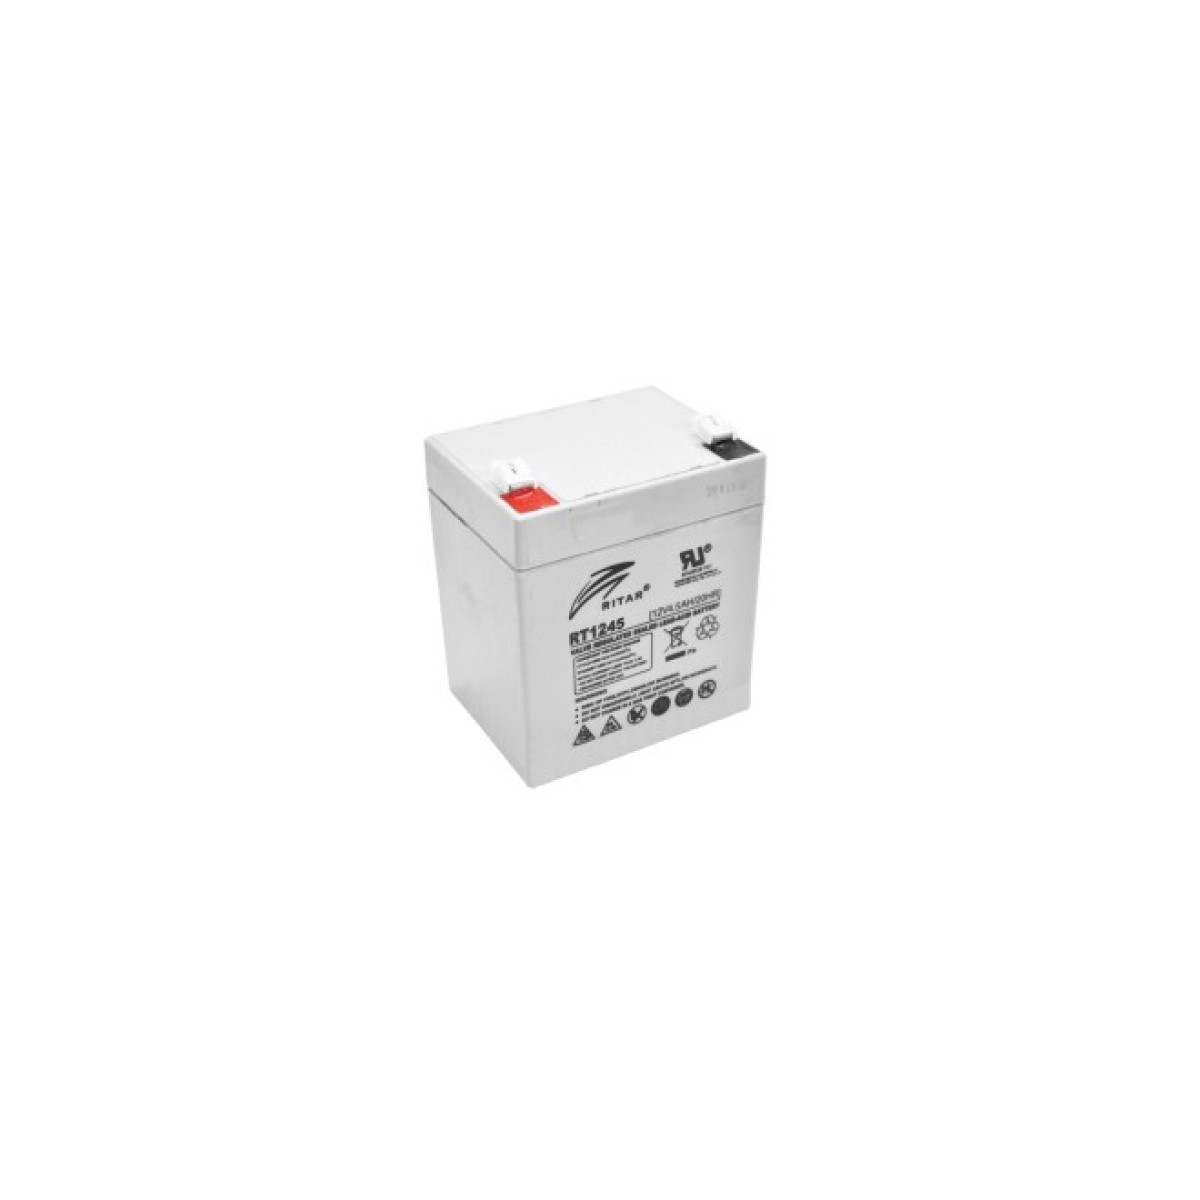 Батарея к ИБП Ritar AGM RT1245, 12V-4.5Ah (RT1245) 98_98.jpg